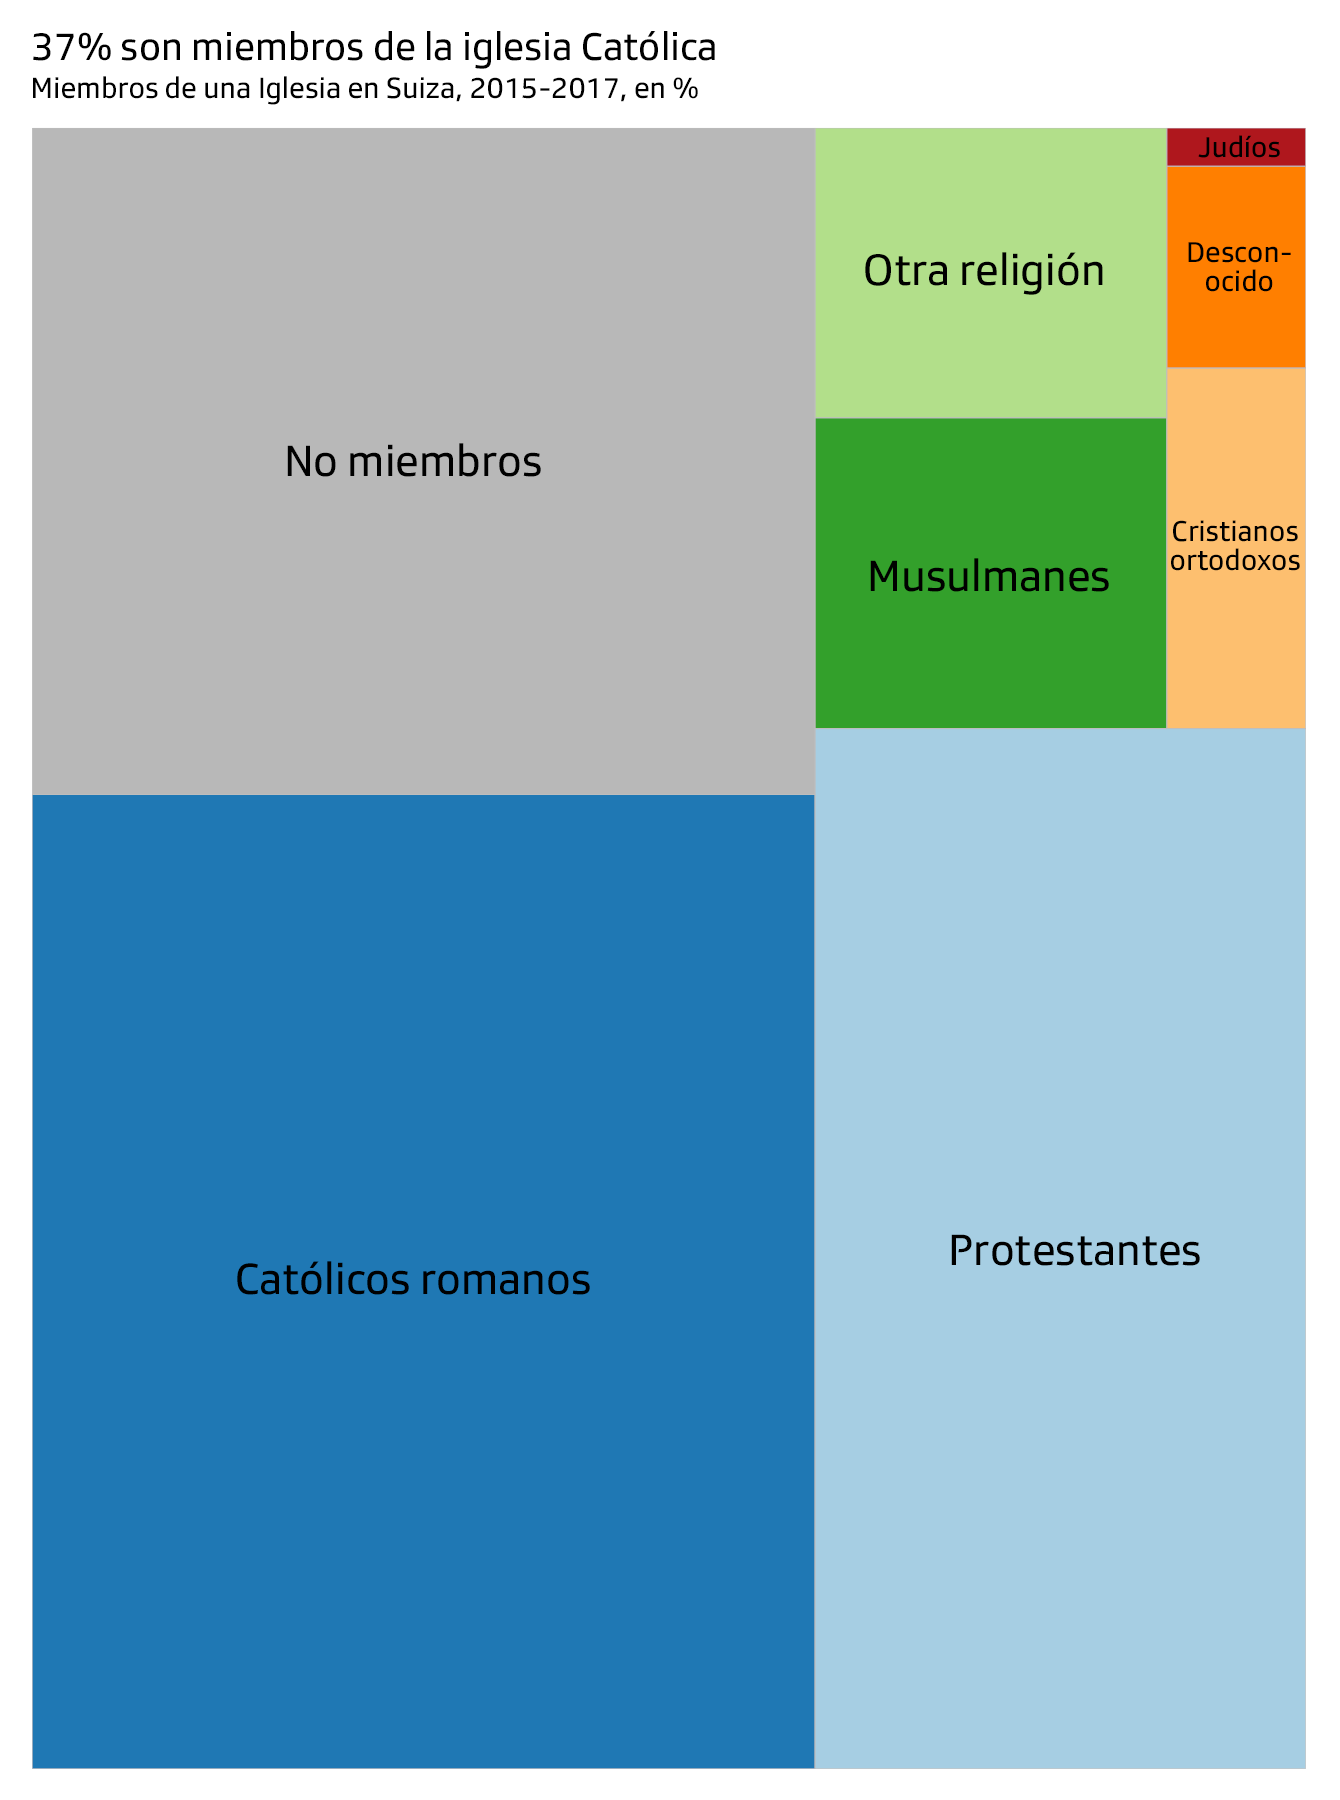 Gráfico sobre religiones en Suiza